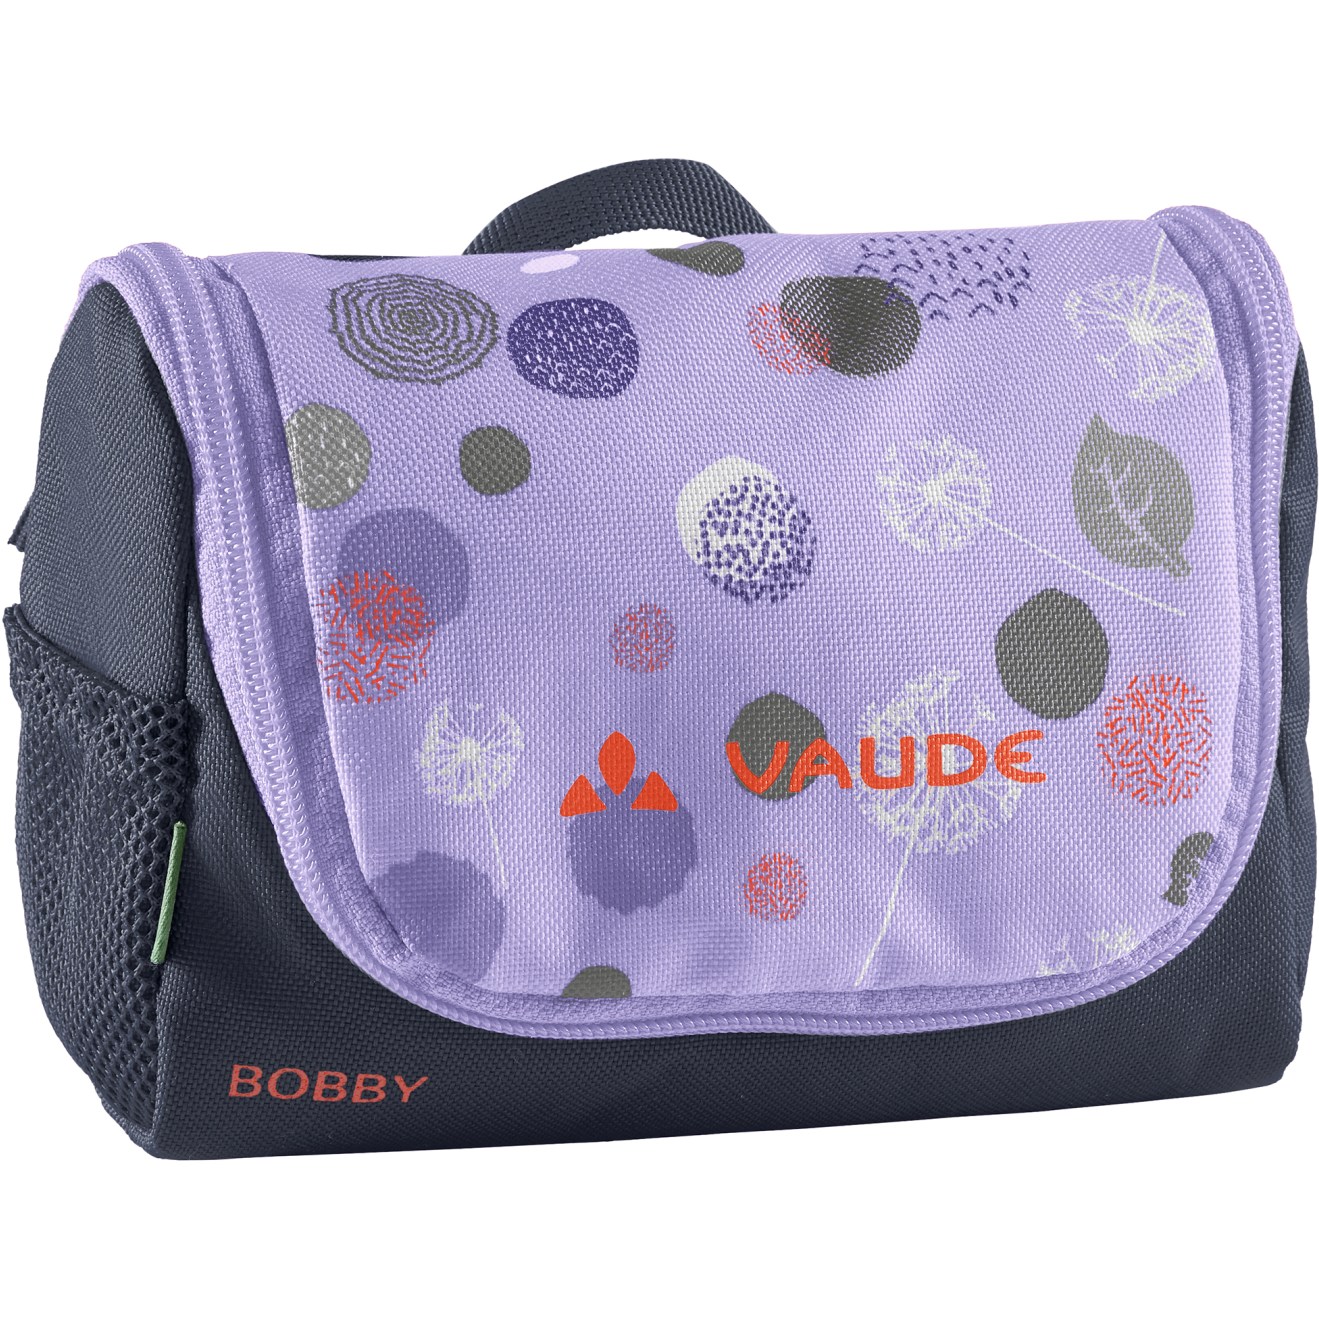 Produktbild von Vaude Bobby Waschtasche 1L Kinder - pastel lilac